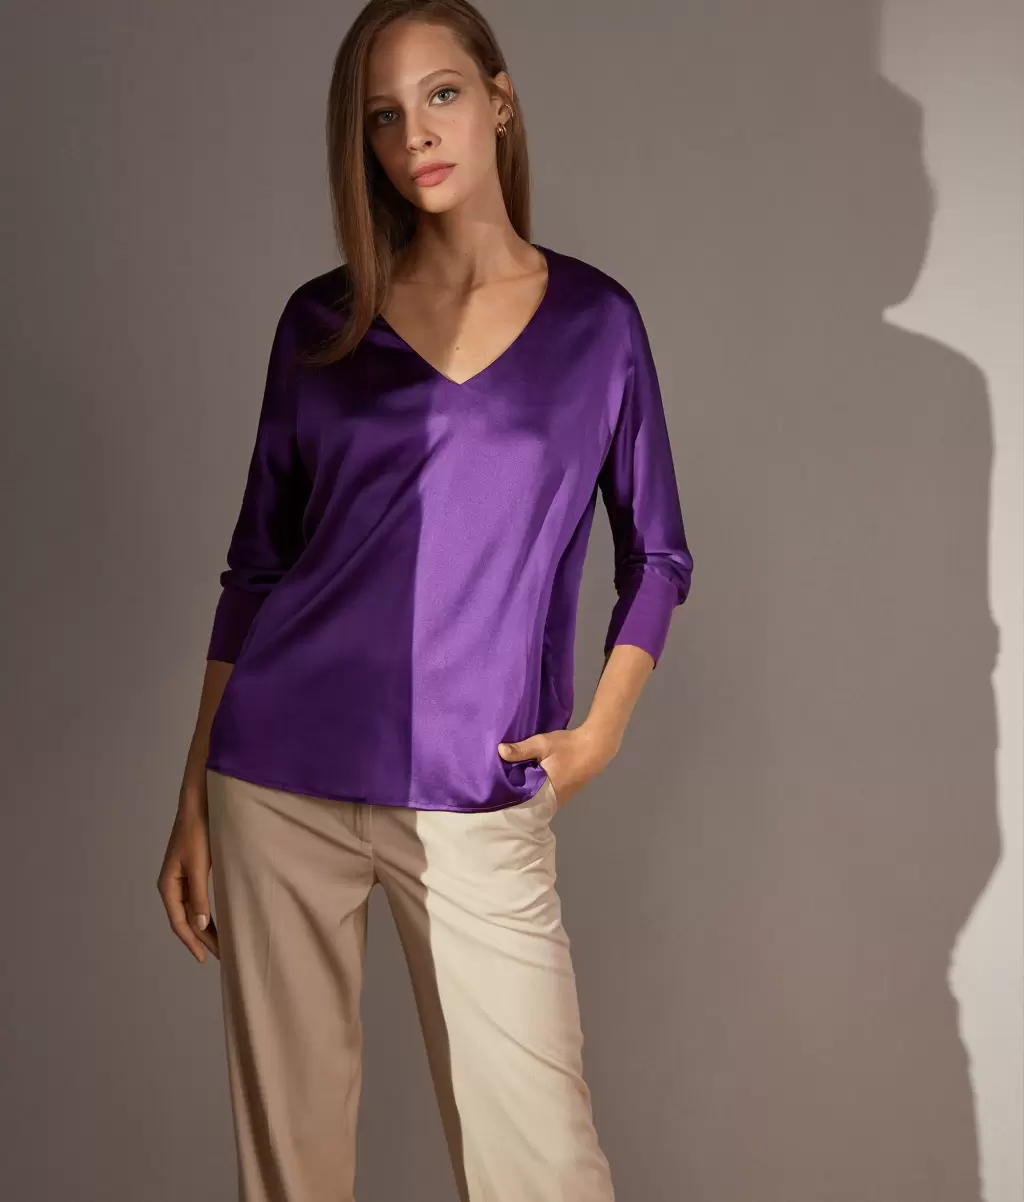 Falconeri Koszule I Bluzki Violet Jedwabna Bluzka Z Dekoltem W Serek Kobieta